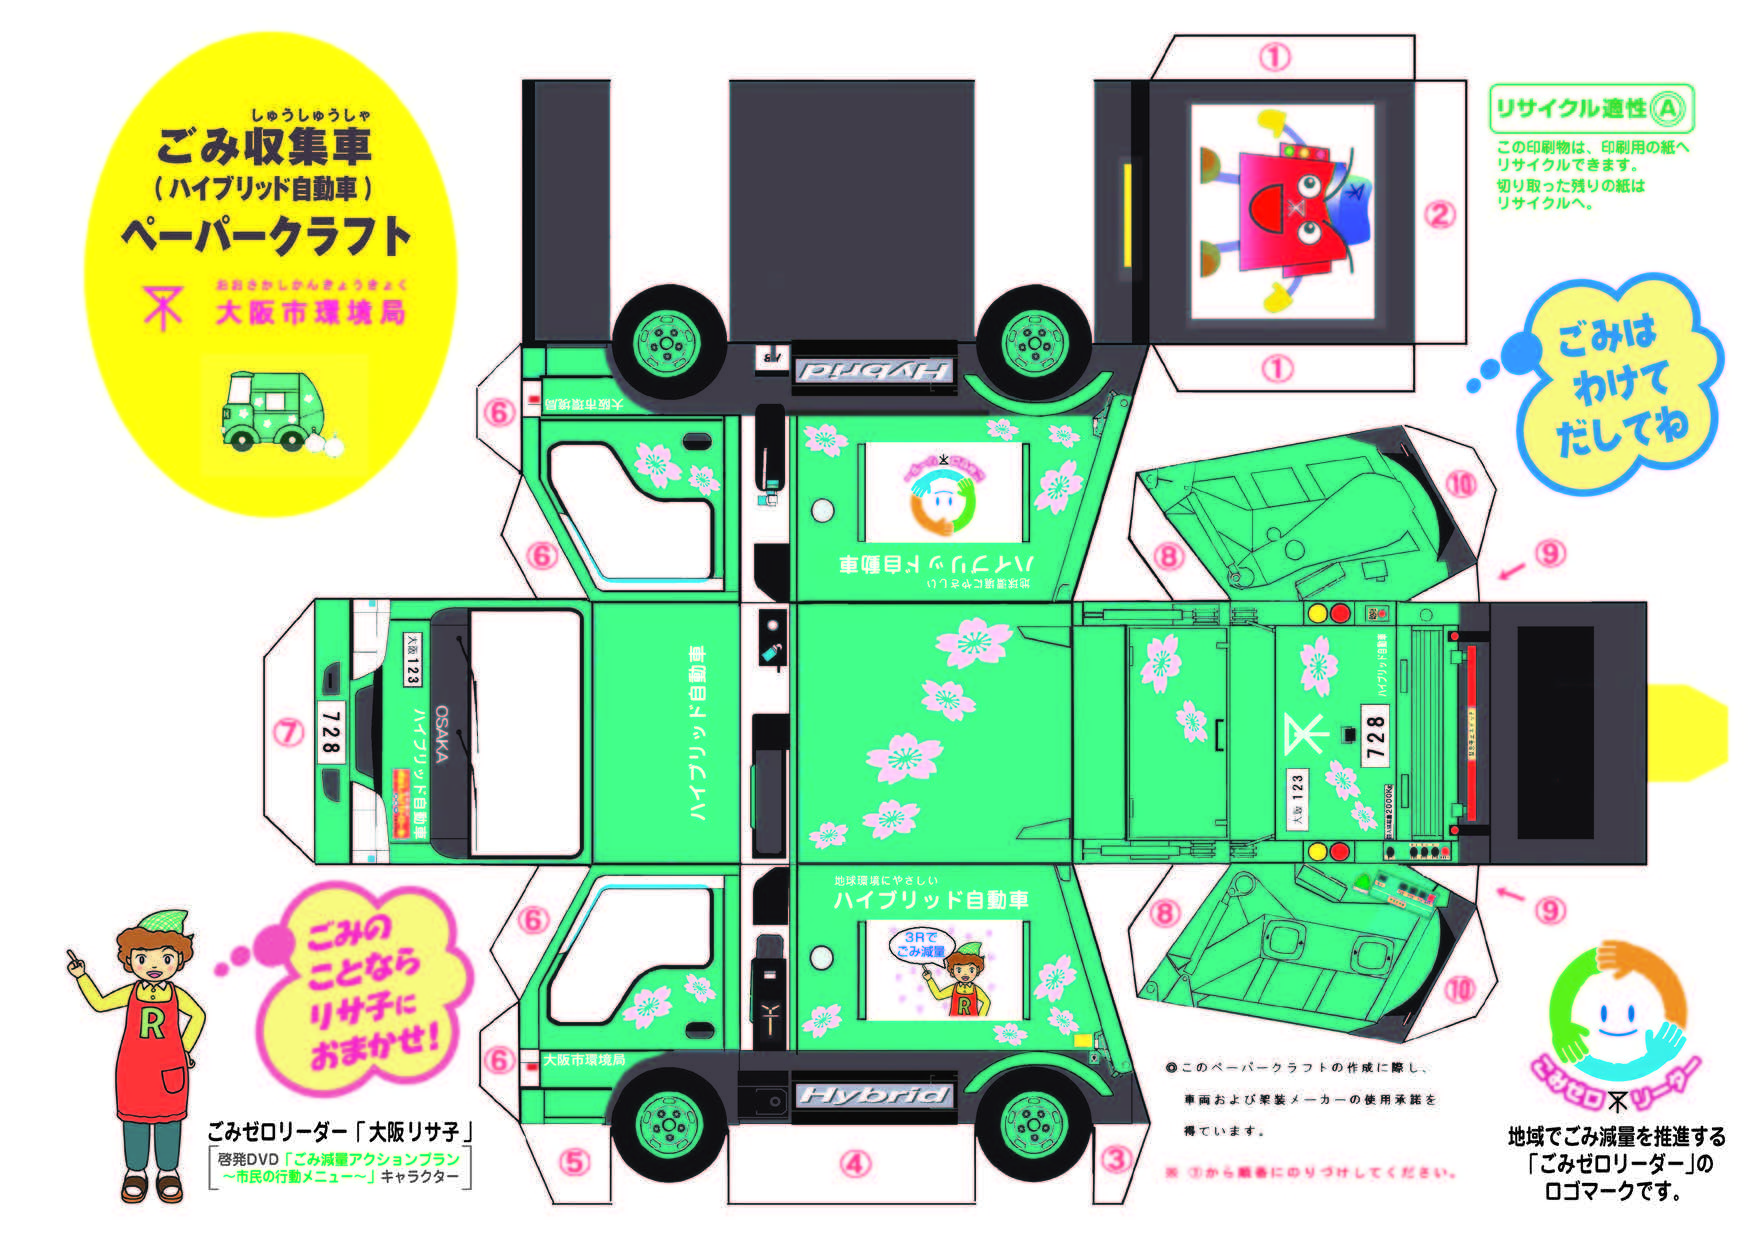 大阪市 パッカー車 ごみ収集車 のペーパークラフトを手に入れよう こども向けページ こどもたちへのお知らせ